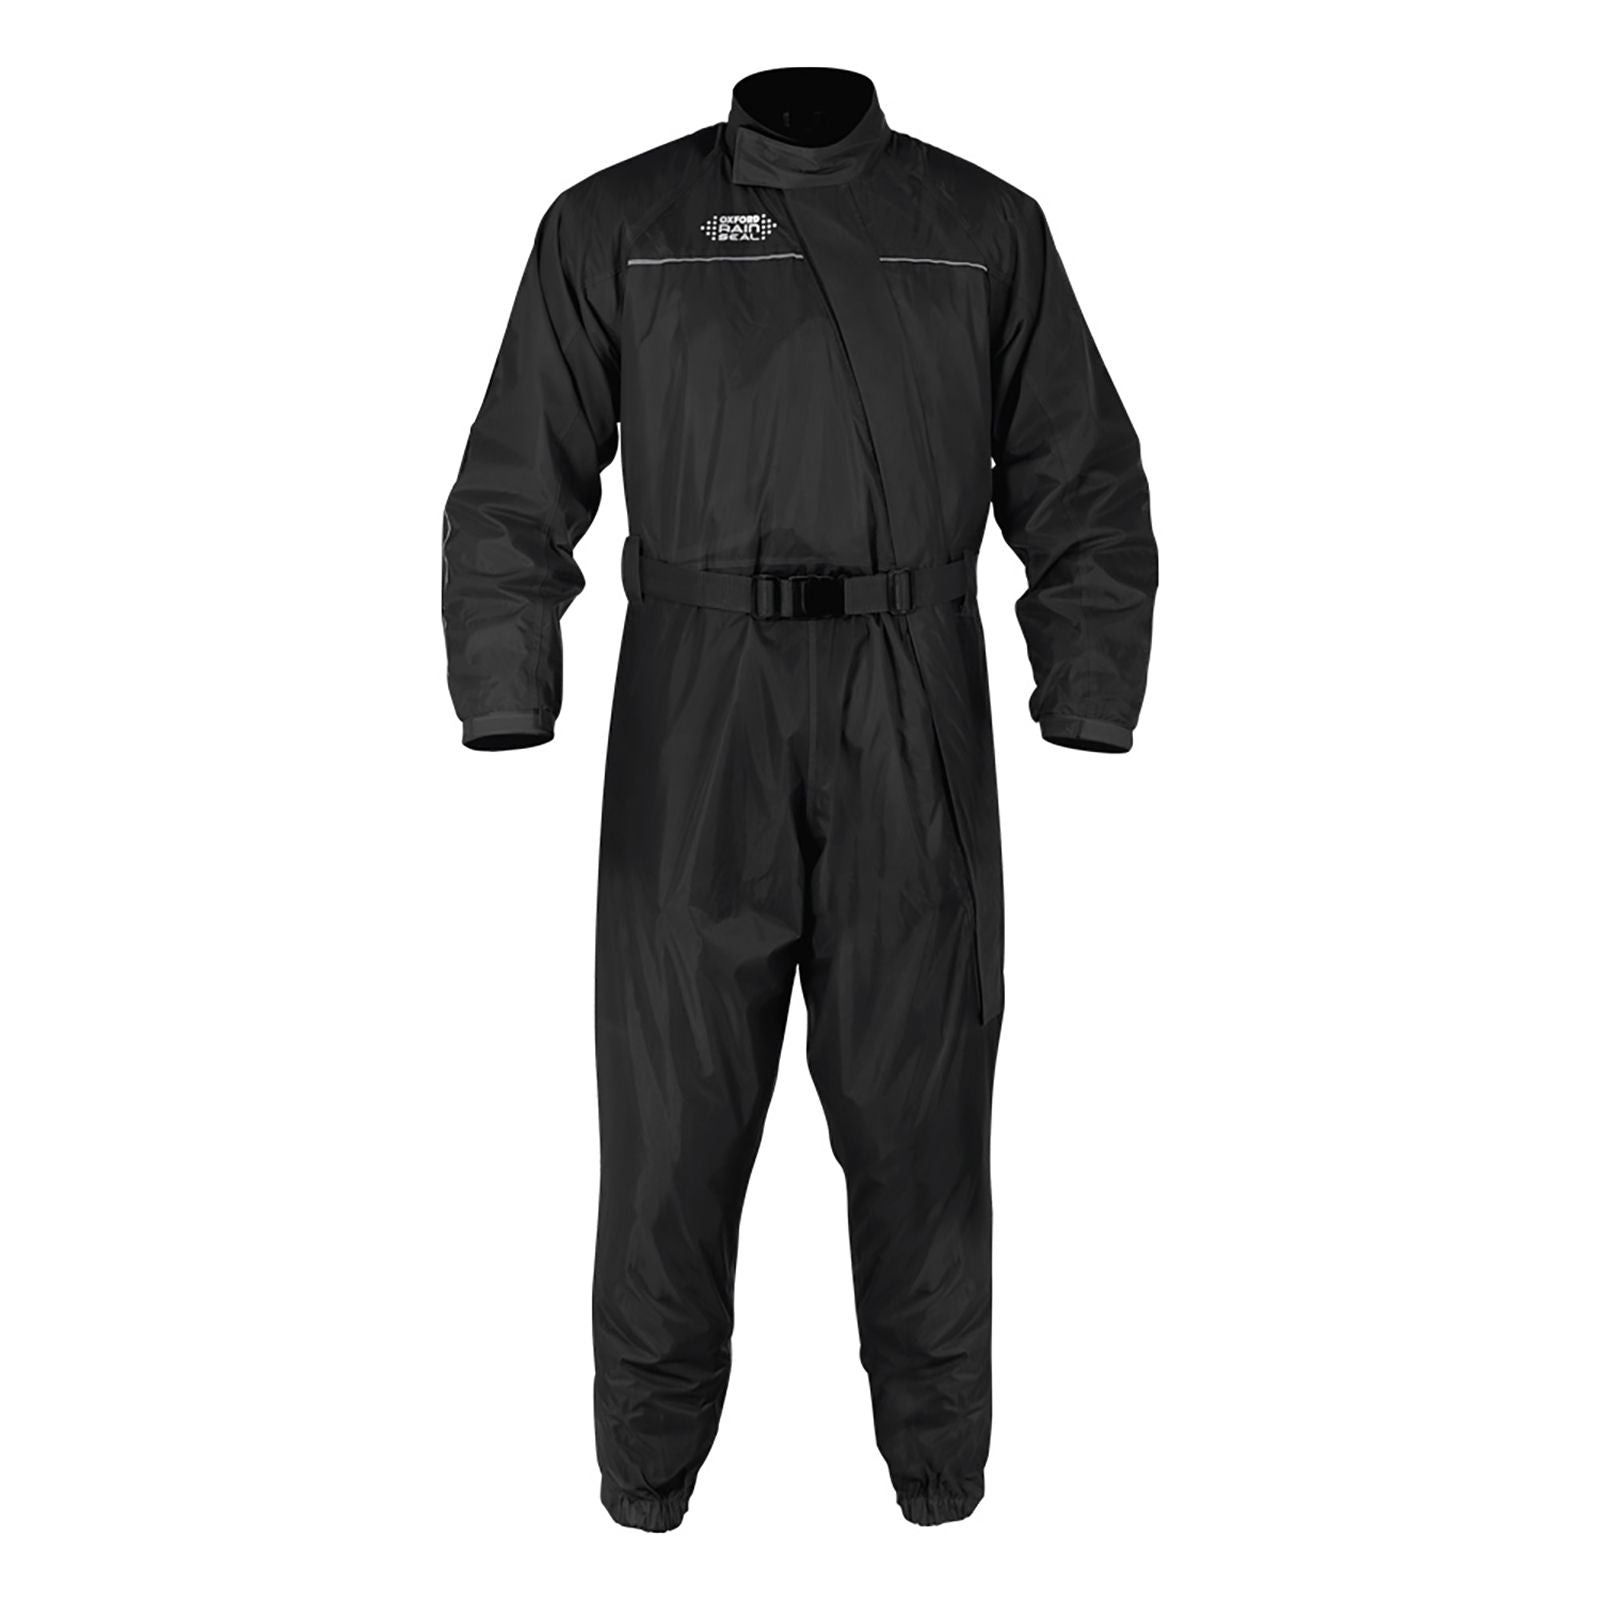 New OXFORD Rainseal Rain Suit - Black - Large #OXRM300L